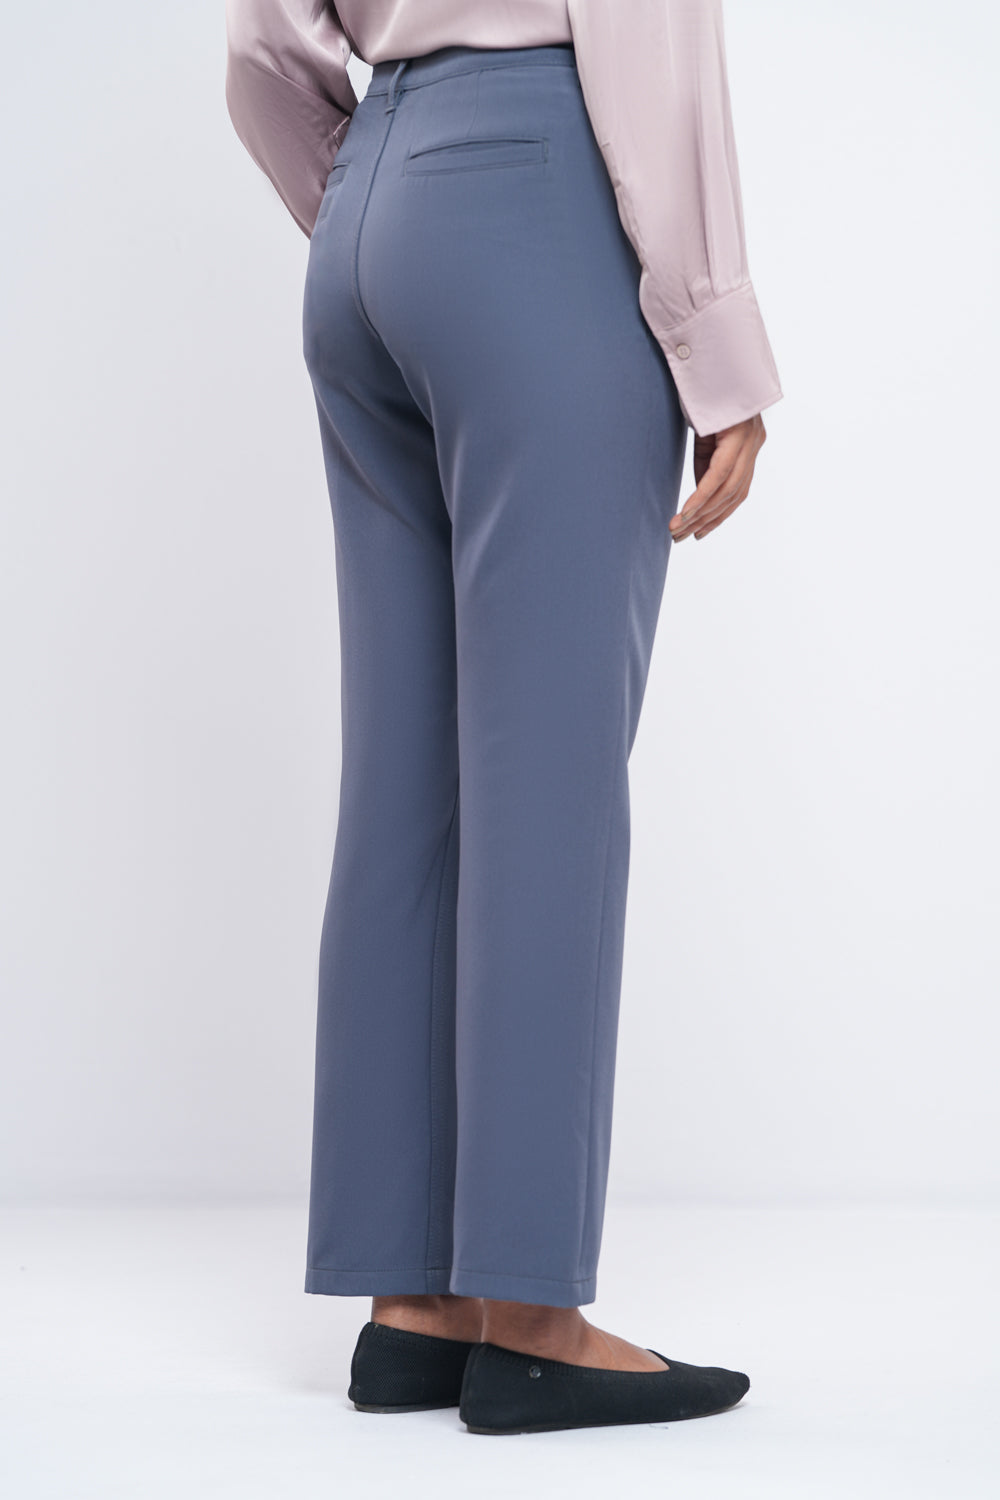 Women's Fashion Trousers